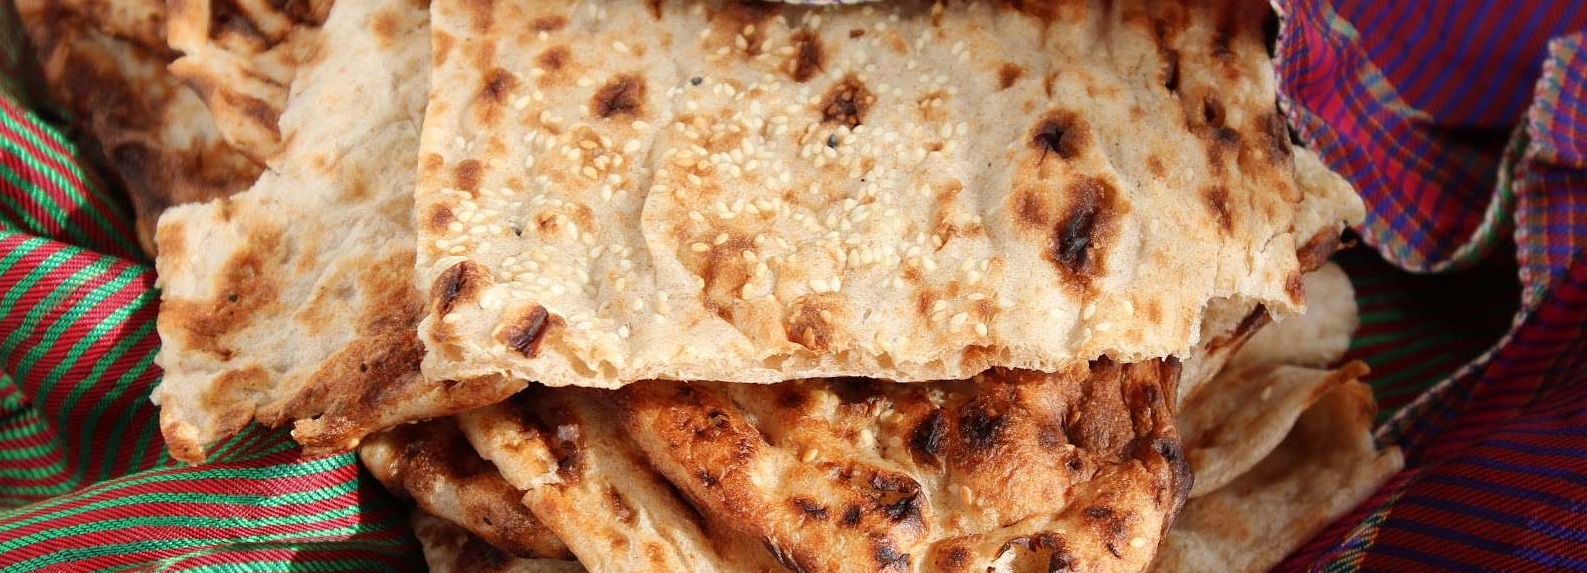 قیمت نان سنگک آزاد پزی در شمال تهران 1300 تومان شد